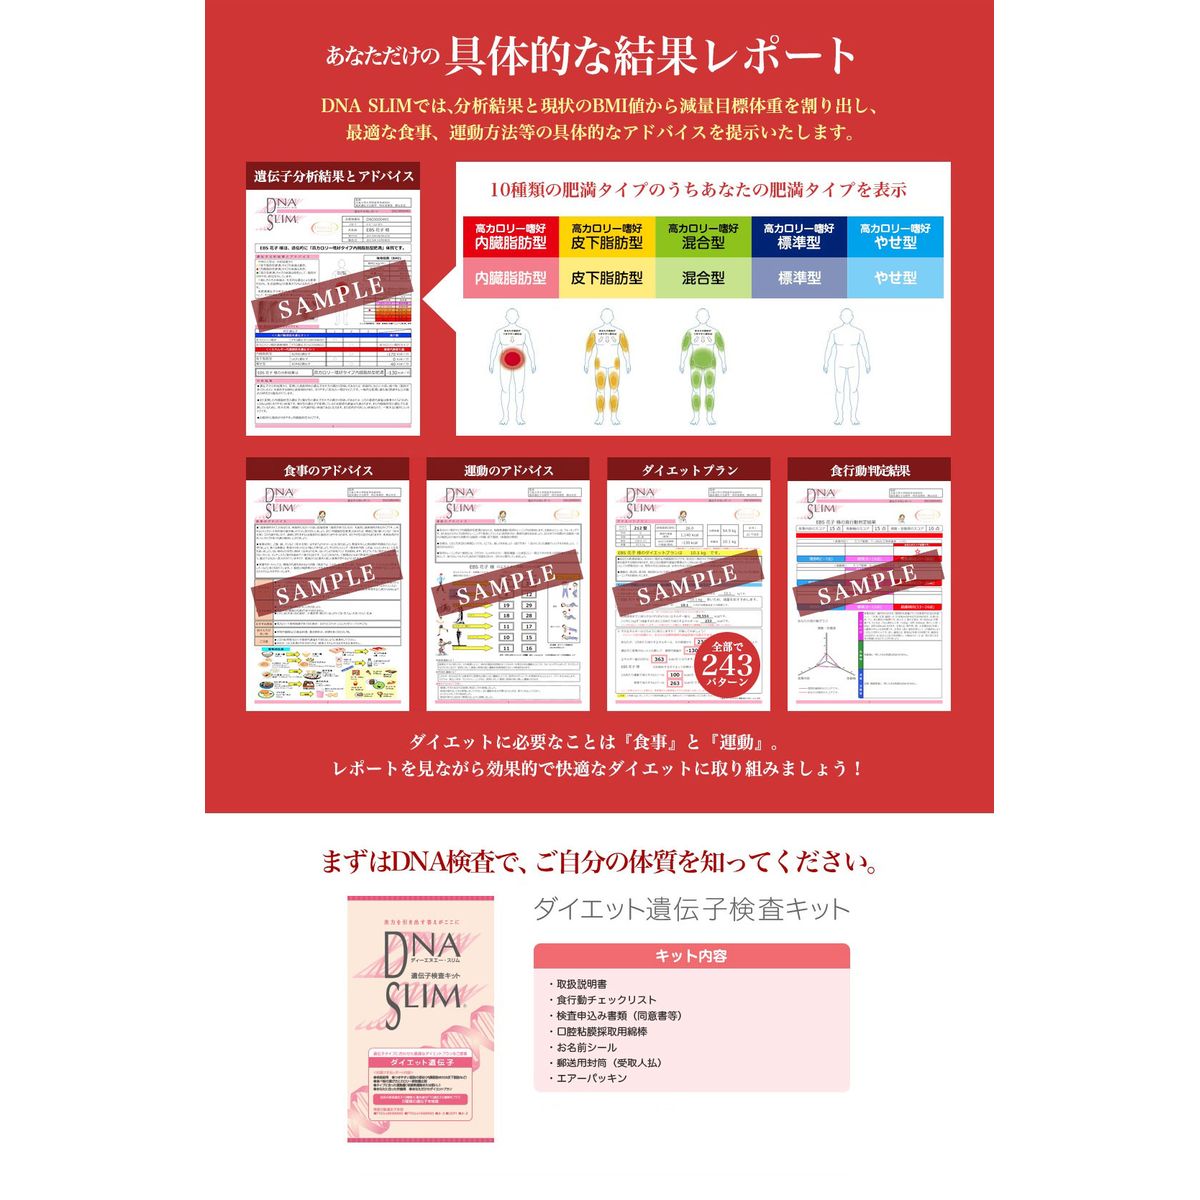 H&BP遺伝子検査キット お買い物 nishiedenim.jp